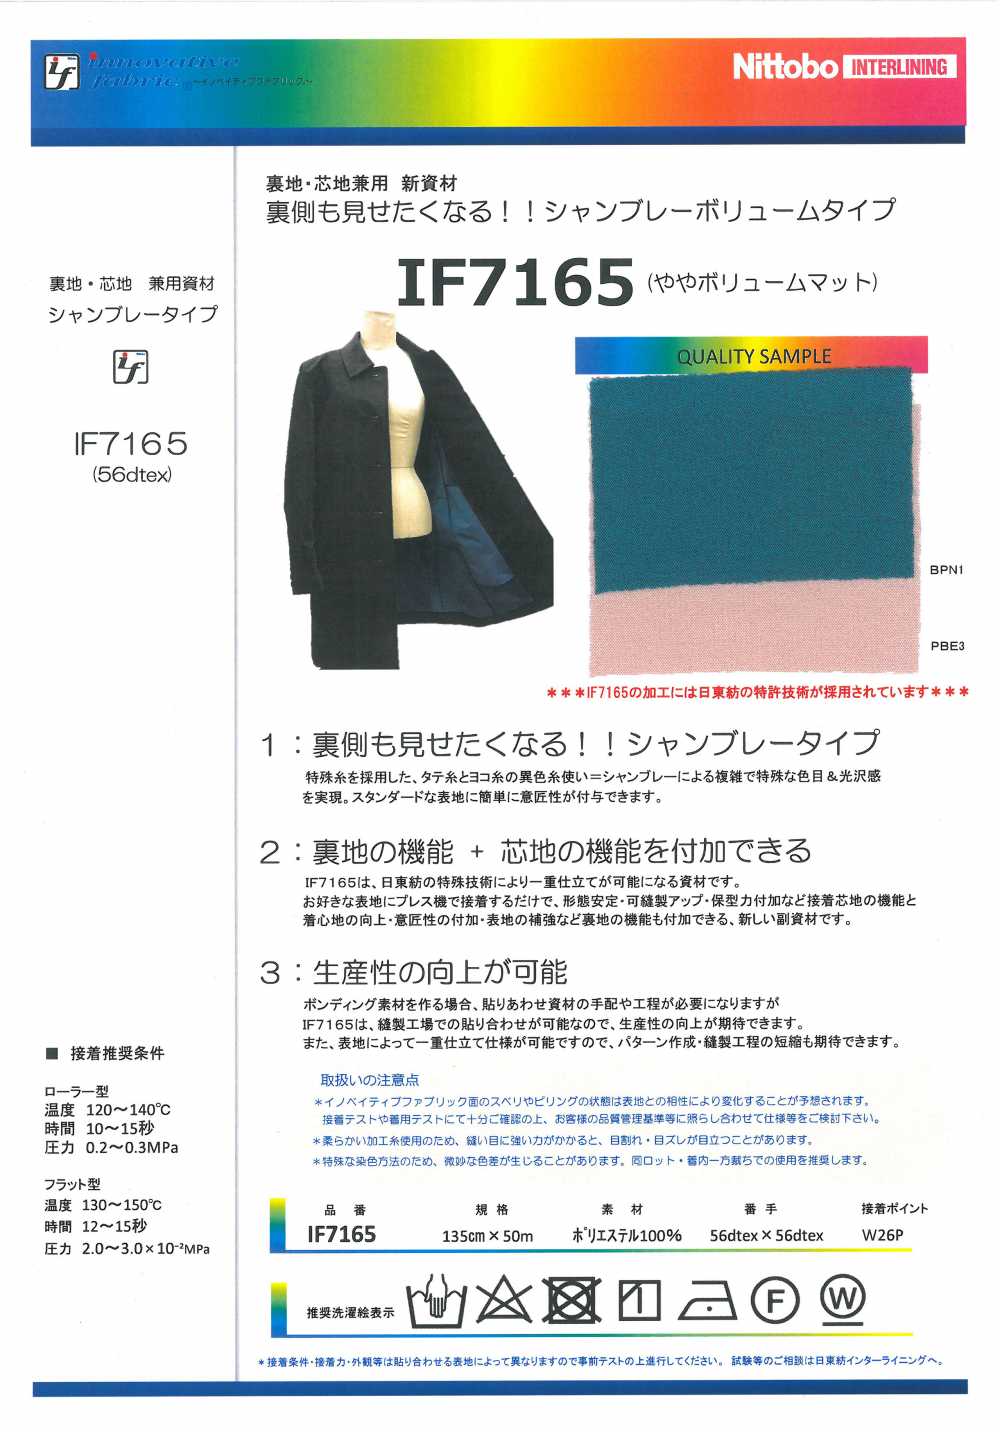 IF7165 Loại Khối Lượng Vải Chambray Vật Liệu Mới (Tấm đệm Nhẹ) Cho Cả Vải Lót Và Lõi[Xen Kẽ] Nittobo